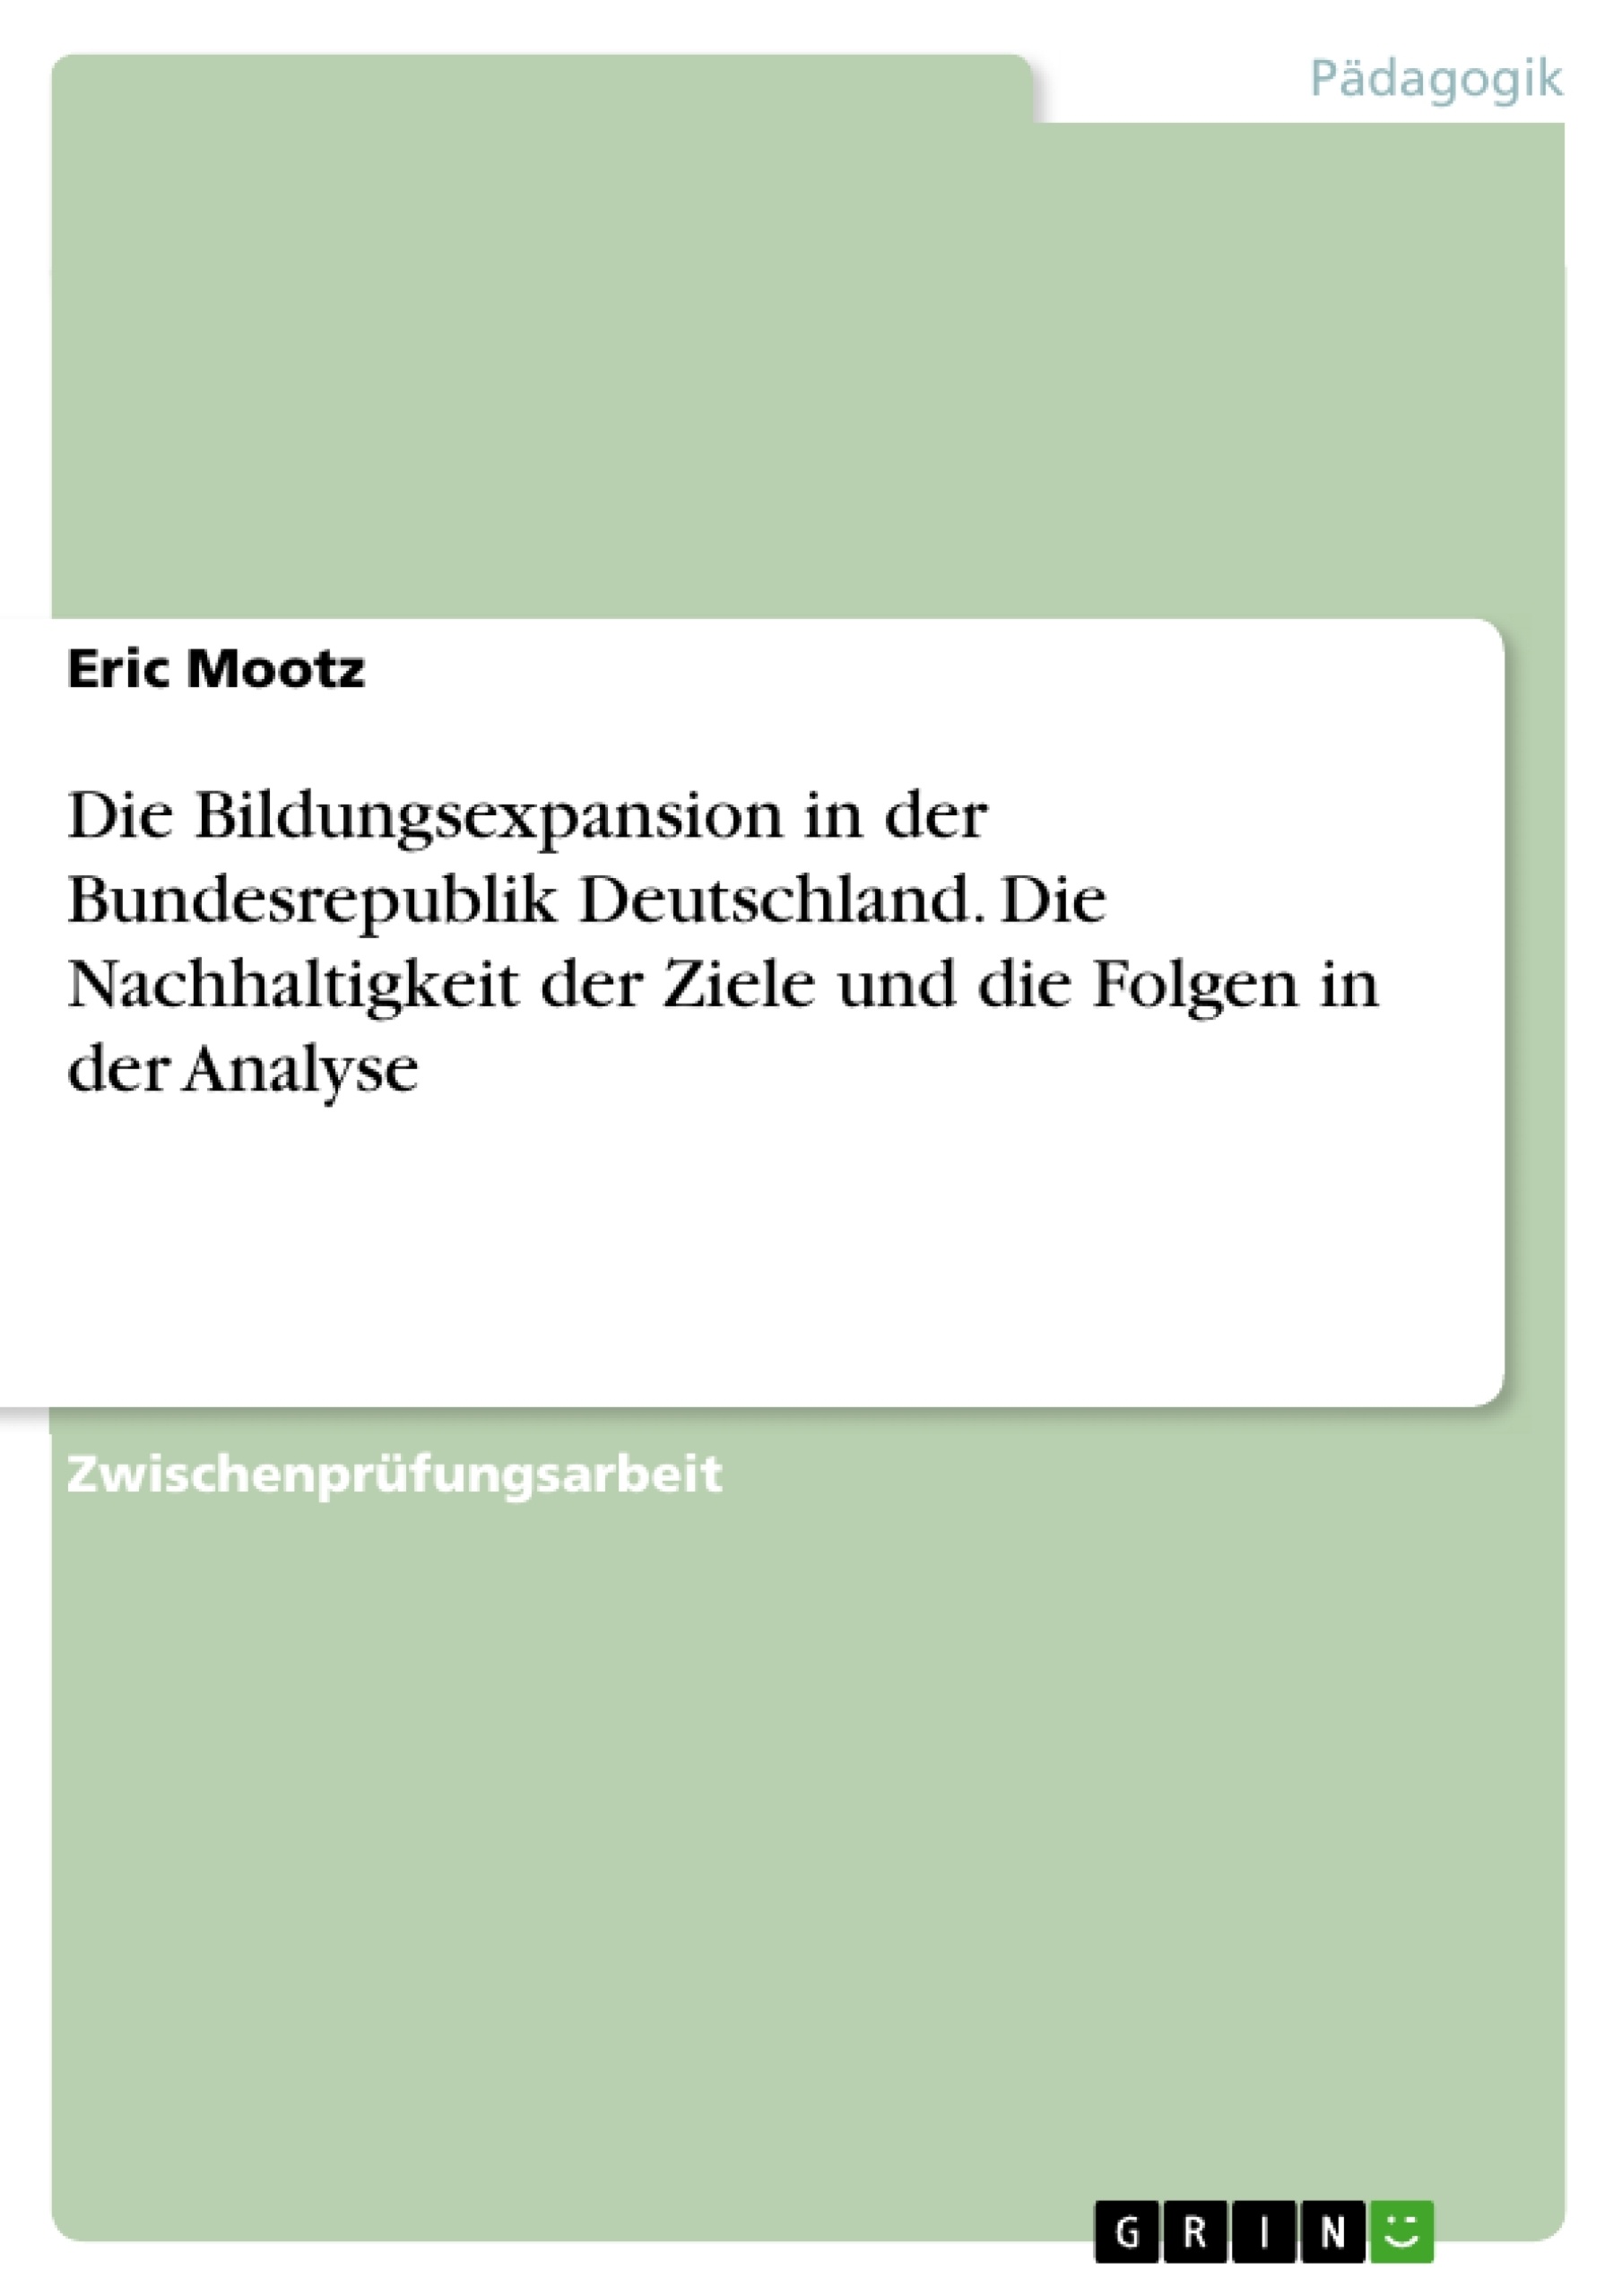 Title: Die Bildungsexpansion in der Bundesrepublik Deutschland. Die Nachhaltigkeit der Ziele und die Folgen in der Analyse